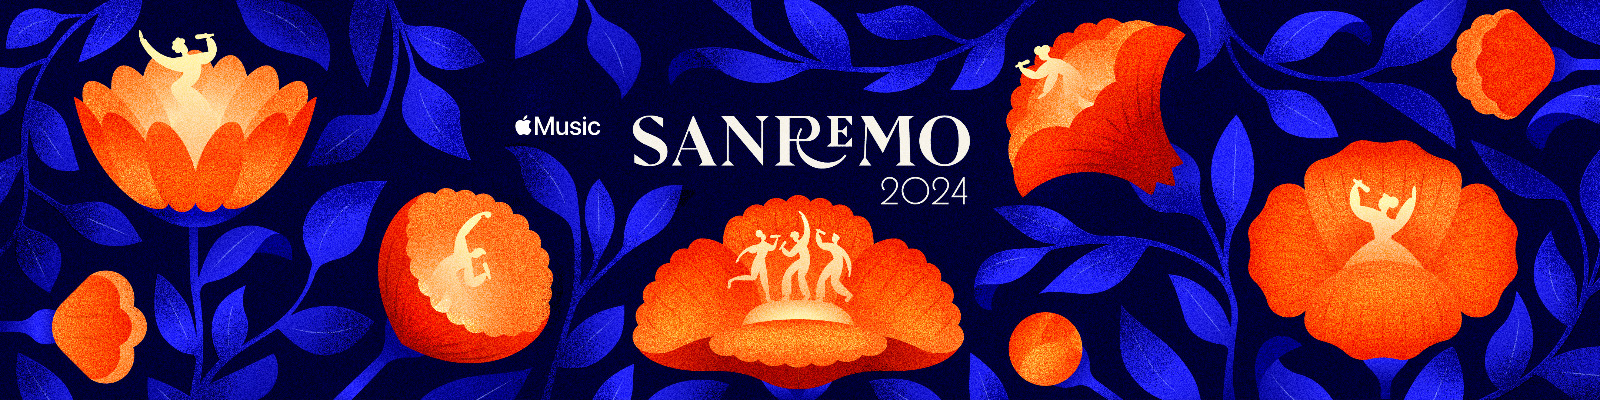 Ecco i brani più shazammati questa settimana tra quelli in gara alla 74esima edizione del Festival di Sanremo.